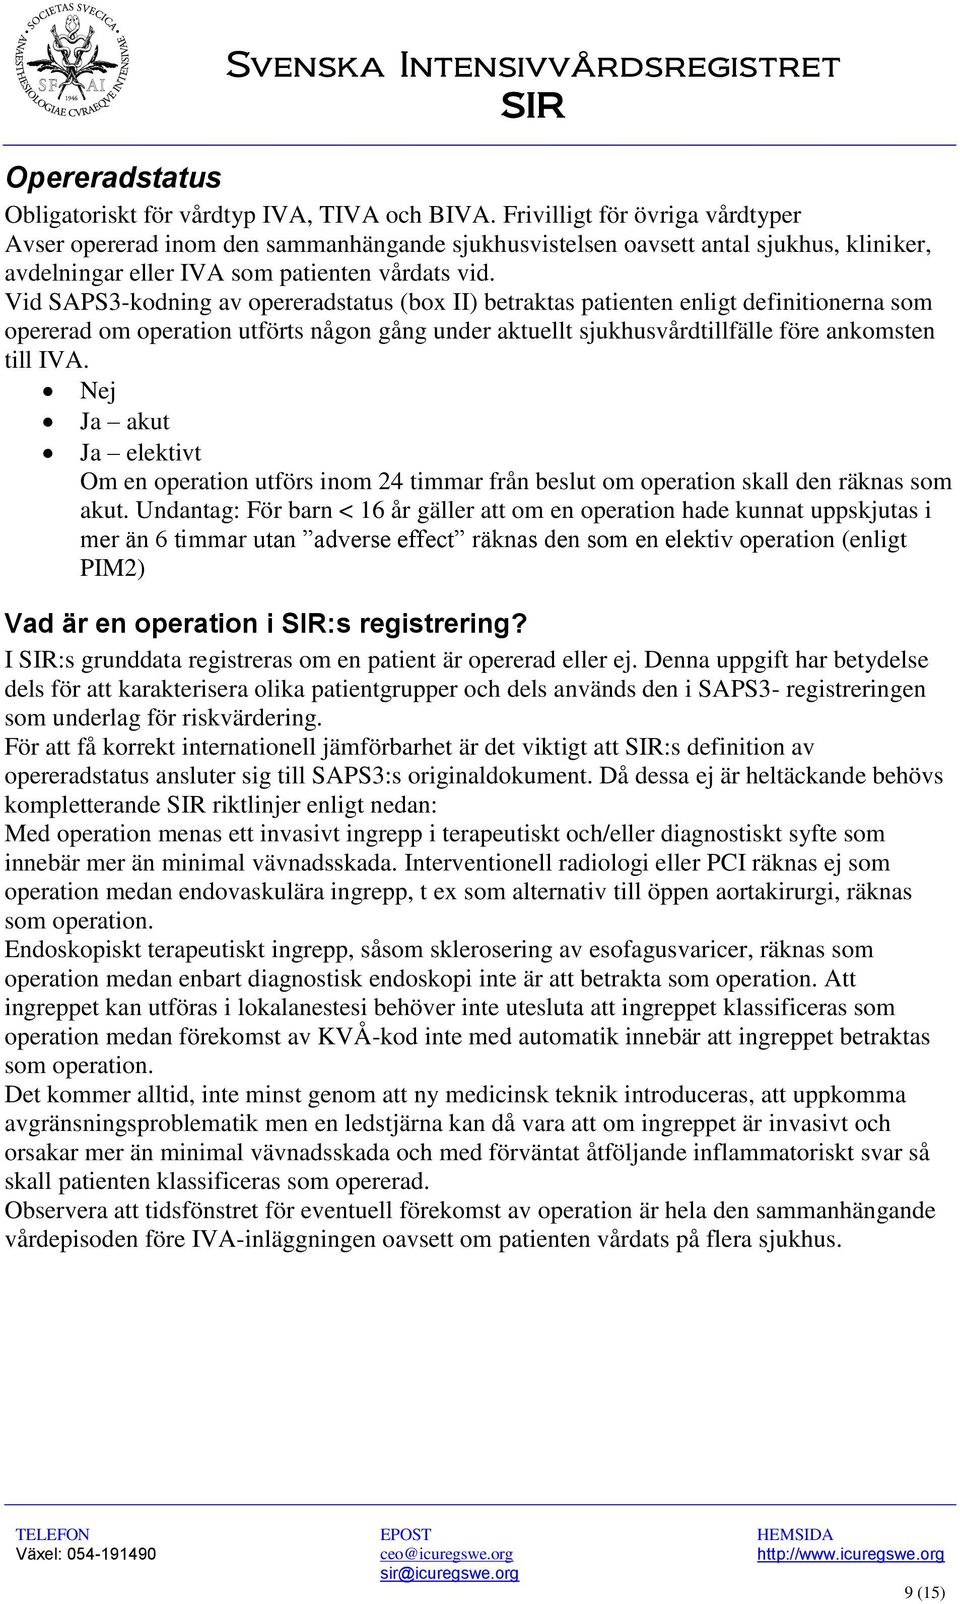 Vid SAPS3-kodning av opereradstatus (box II) betraktas patienten enligt definitionerna som opererad om operation utförts någon gång under aktuellt sjukhusvårdtillfälle före ankomsten till IVA.